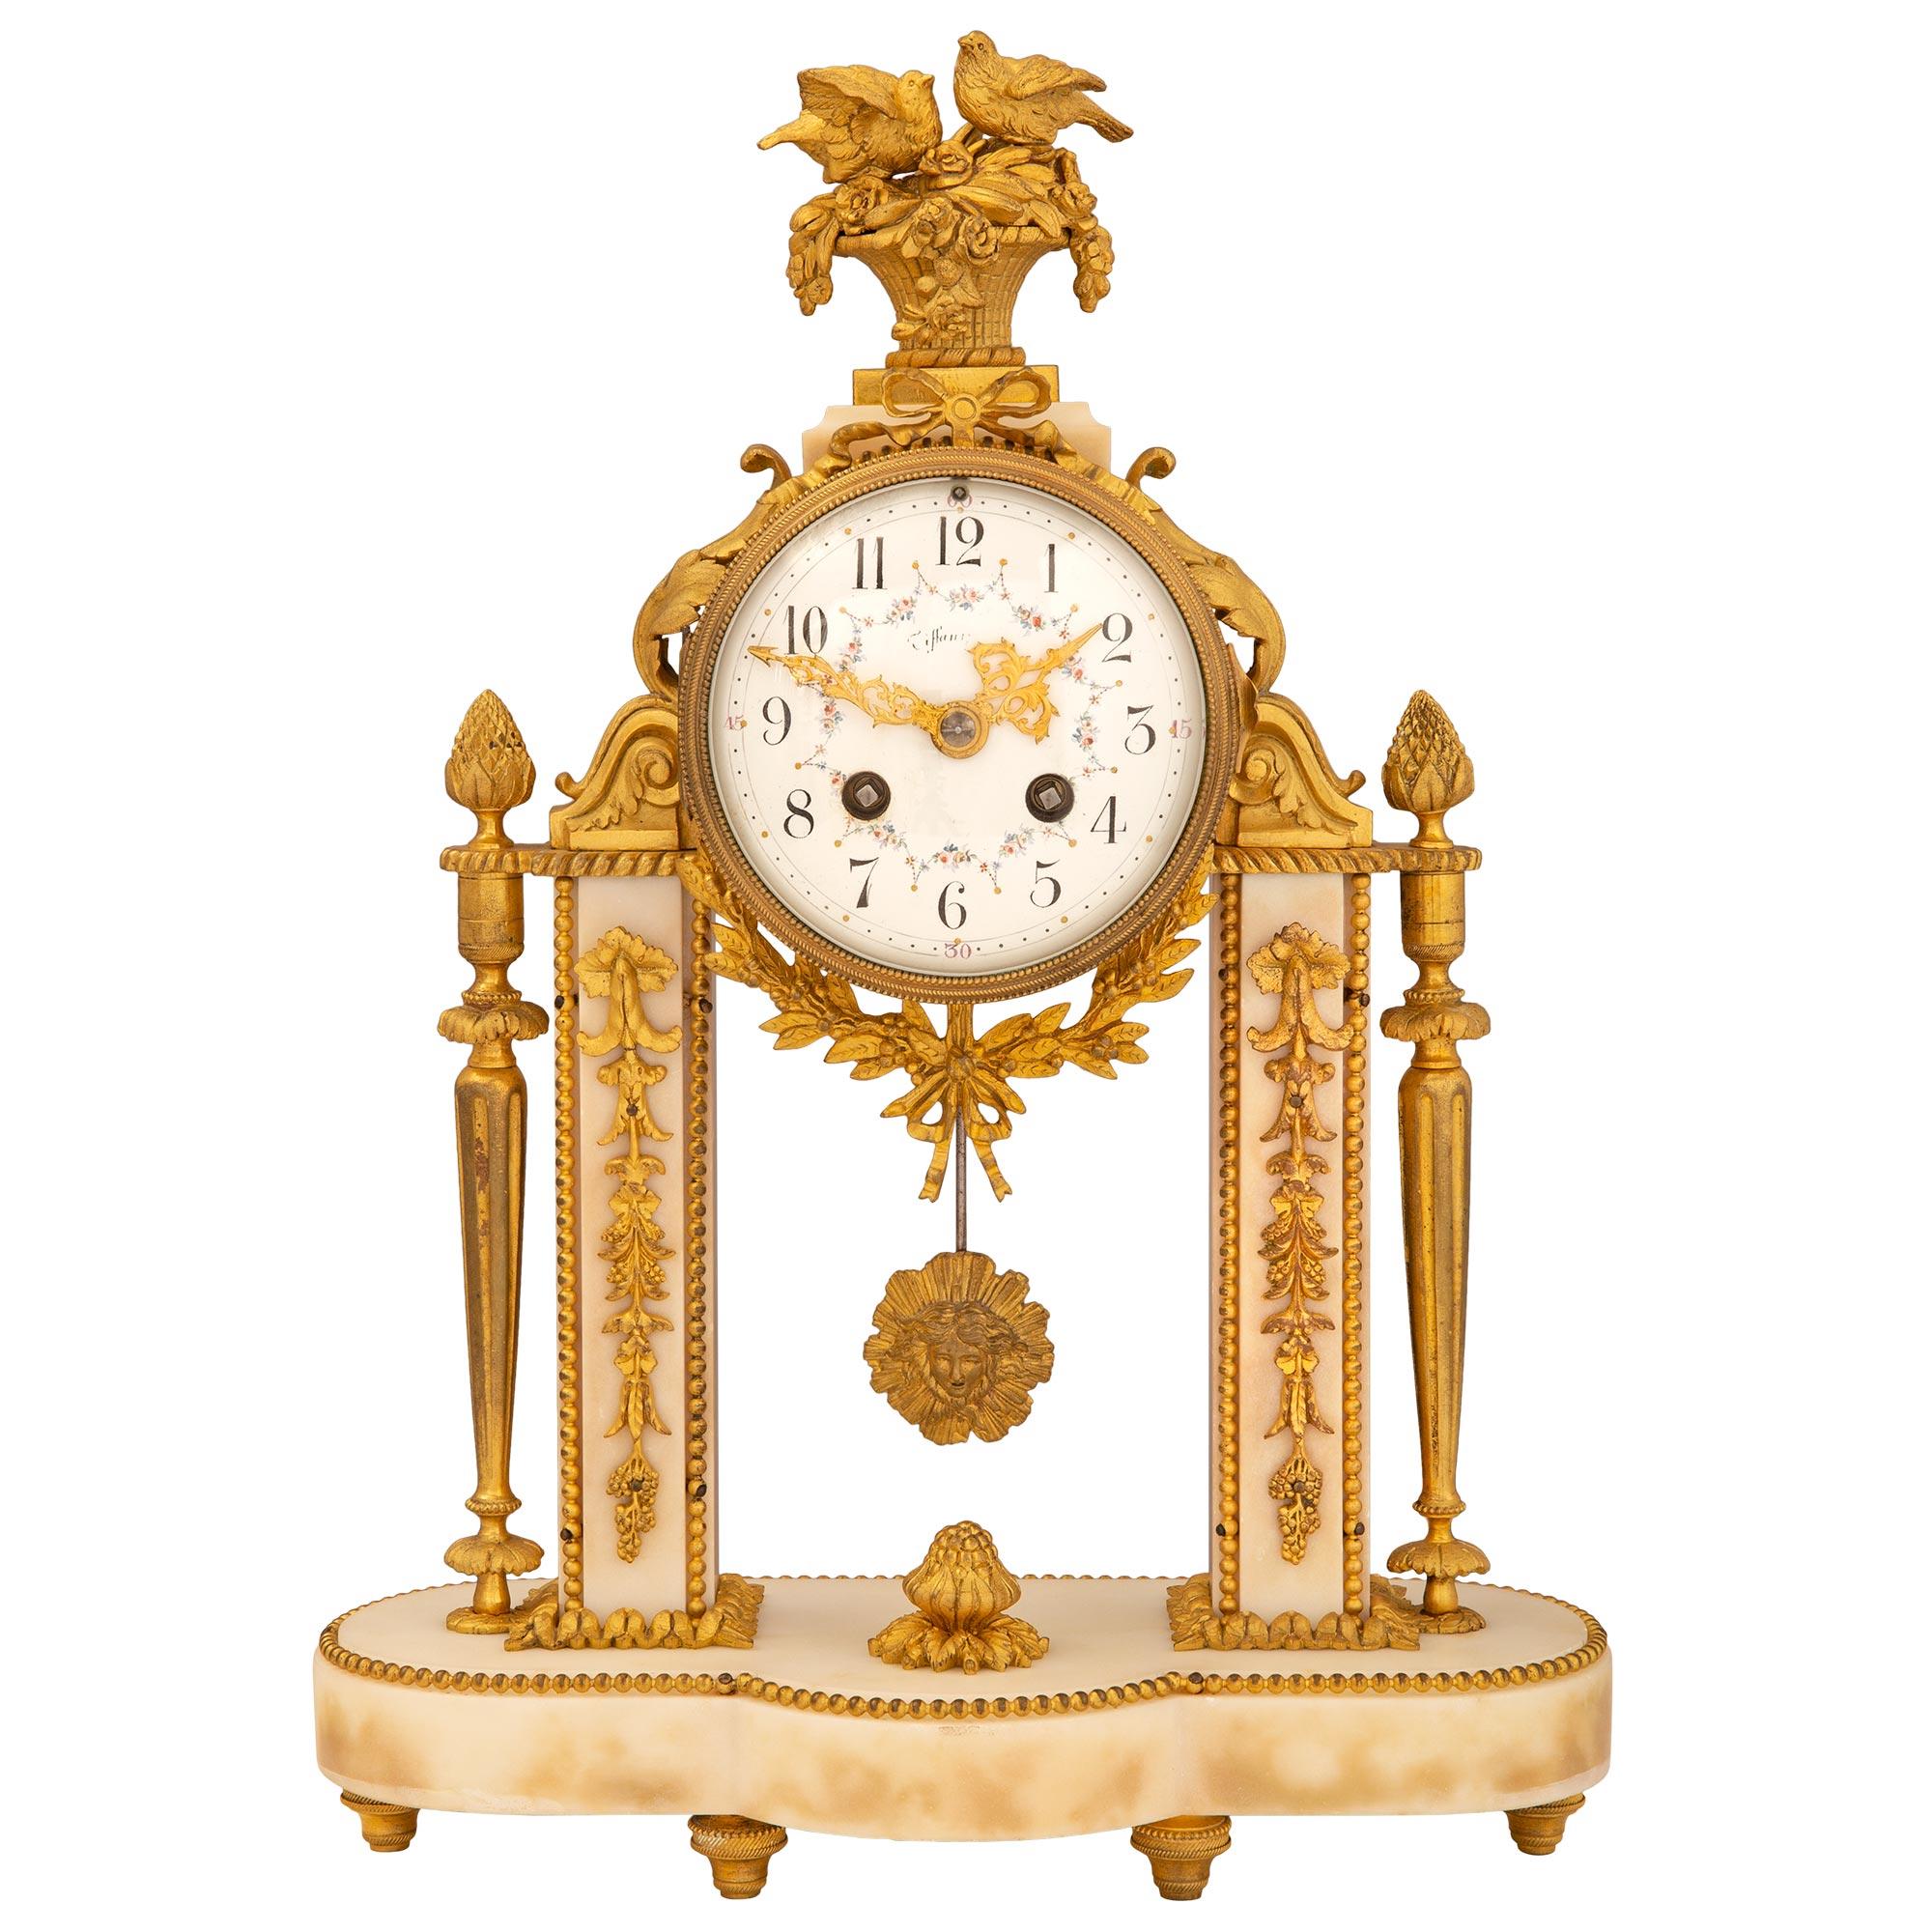 Une exquise horloge de style Louis XVI du 19ème siècle en marbre blanc de Carrare et bronze doré, signée 'Tiffany'. Il repose sur une base en marbre avec des supports en forme de topie en bronze doré. Au-dessus se trouvent deux colonnes décorées par